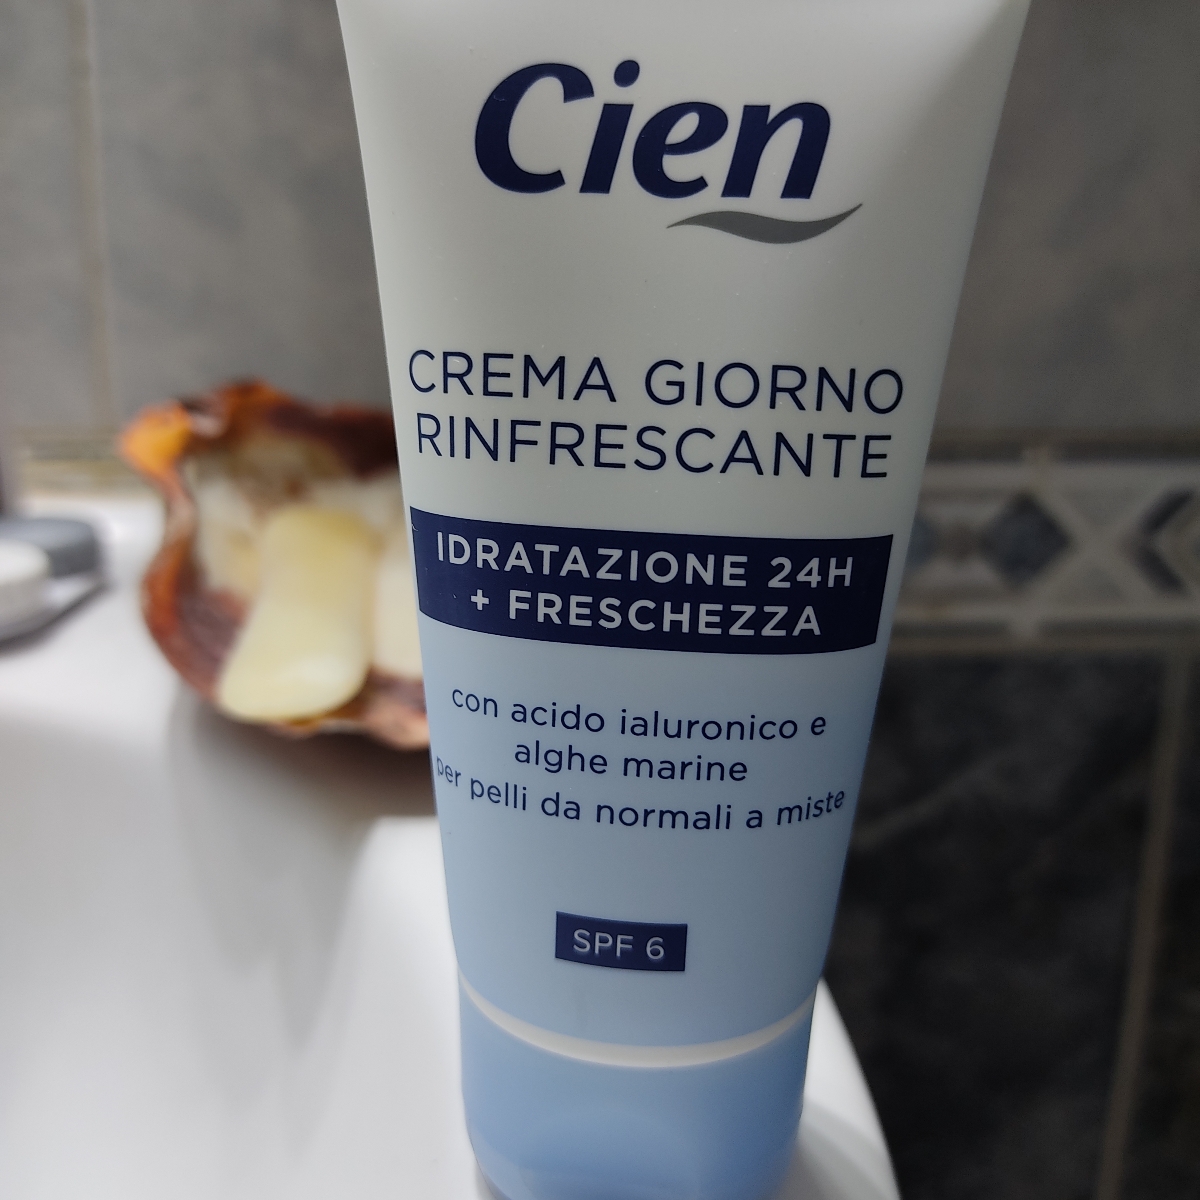 Cien Crema giorno rinfrescante idratante Review | abillion